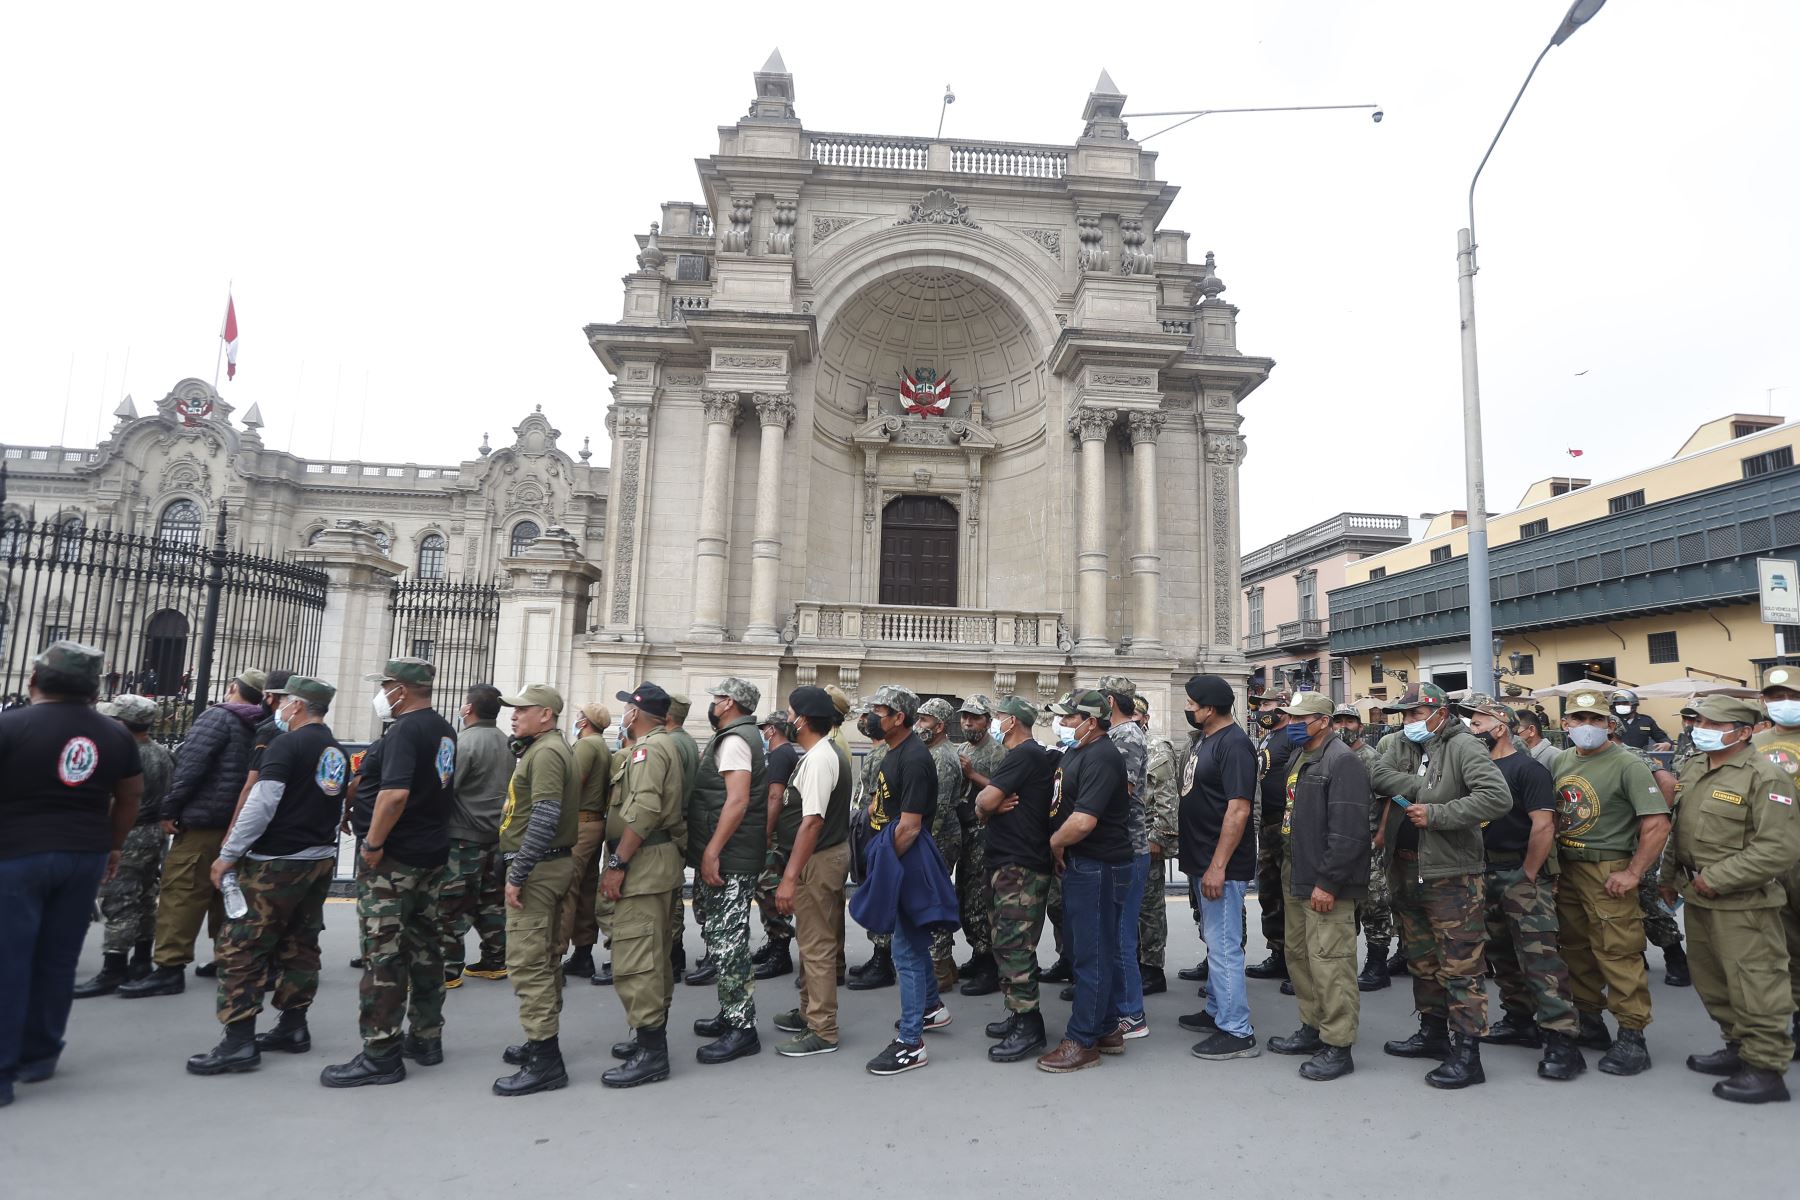 Reservistas llegan a la Plaza Armas e ingresan a Palacio de Gobierno para solicitar sus demandas.
Foto: ANDINA/Renato Pajuelo